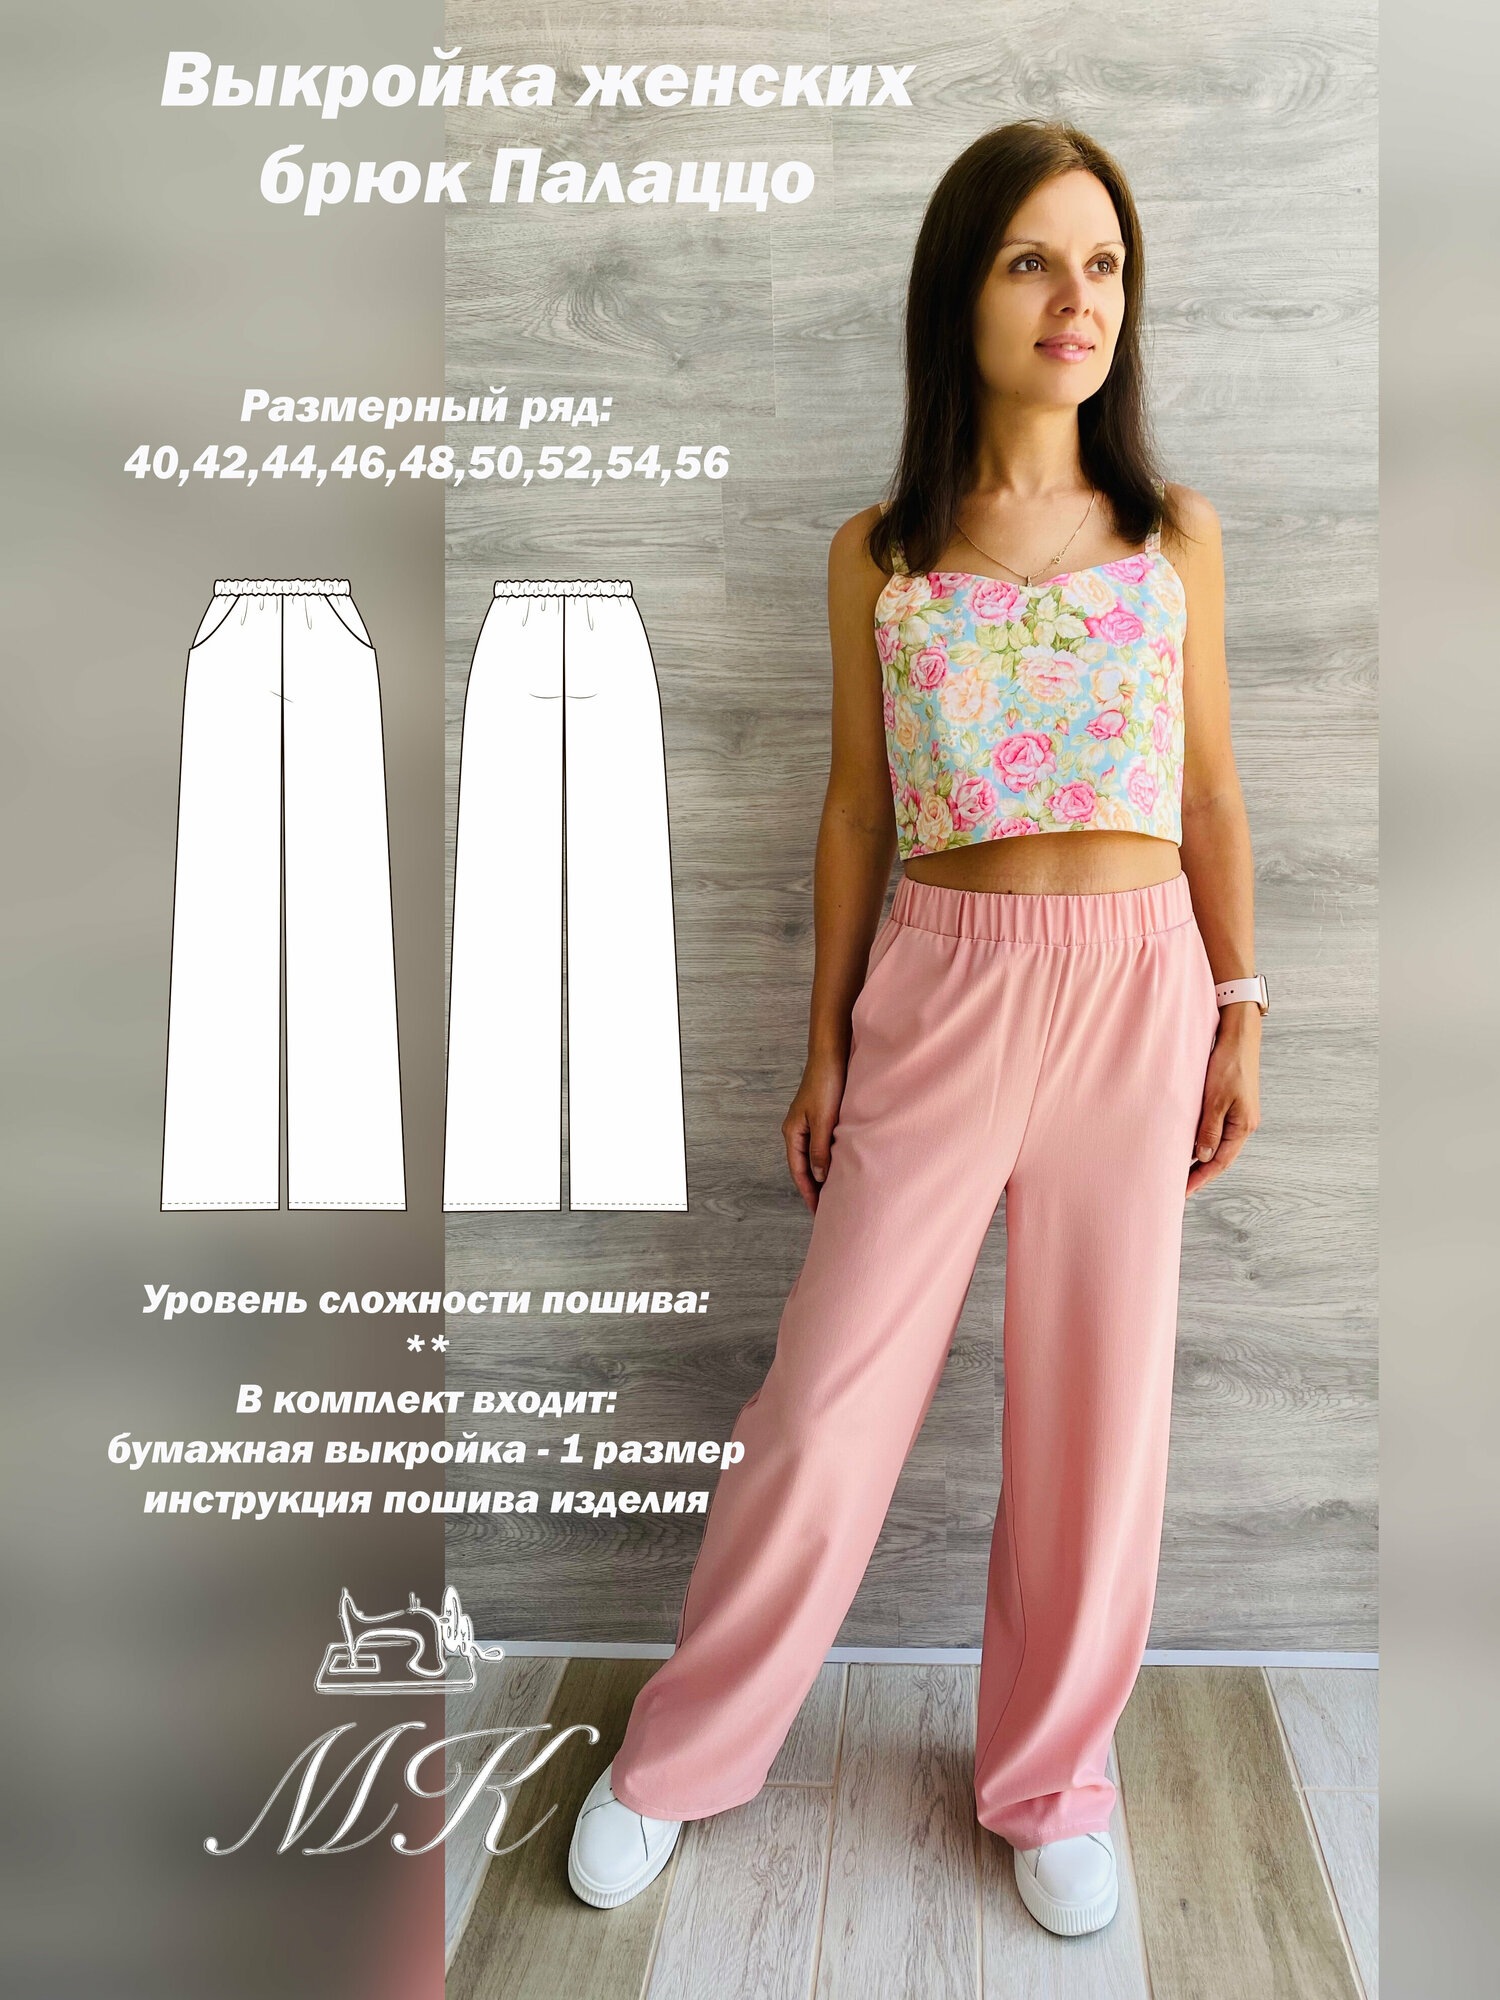 Выкройка для шитья MK-studiya женские брюки свободного кроя размер 44